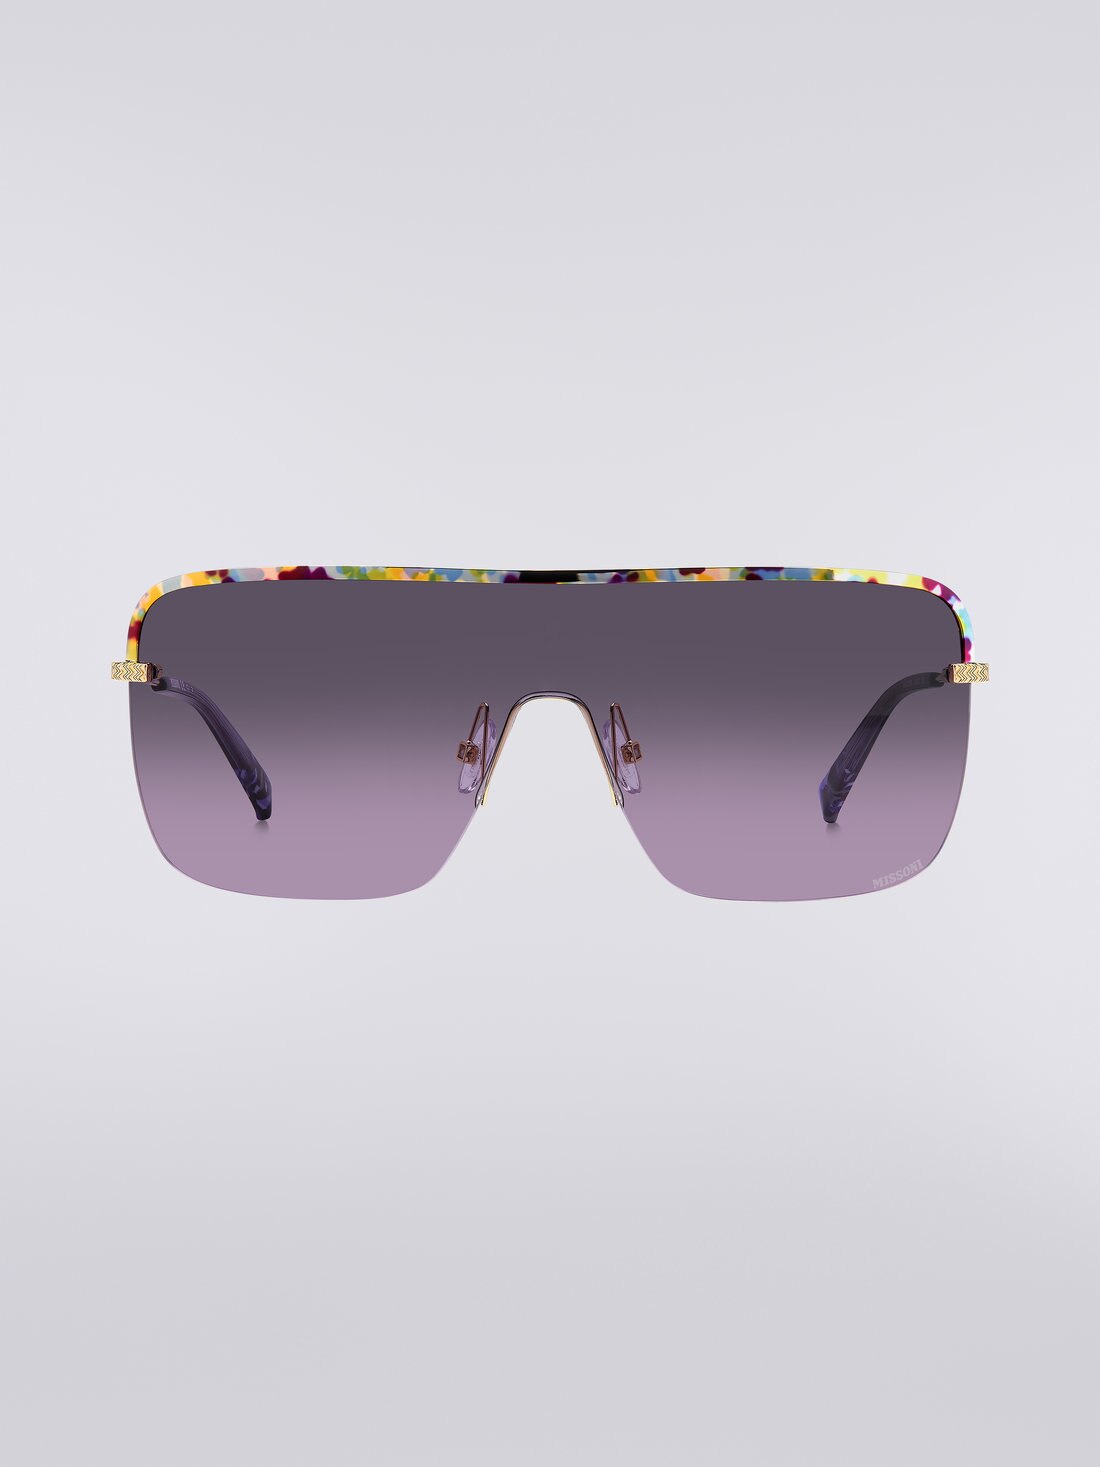 Missoni Seasonal Metal Sunglasses, Multicoloured  - 8051575840227 - 0